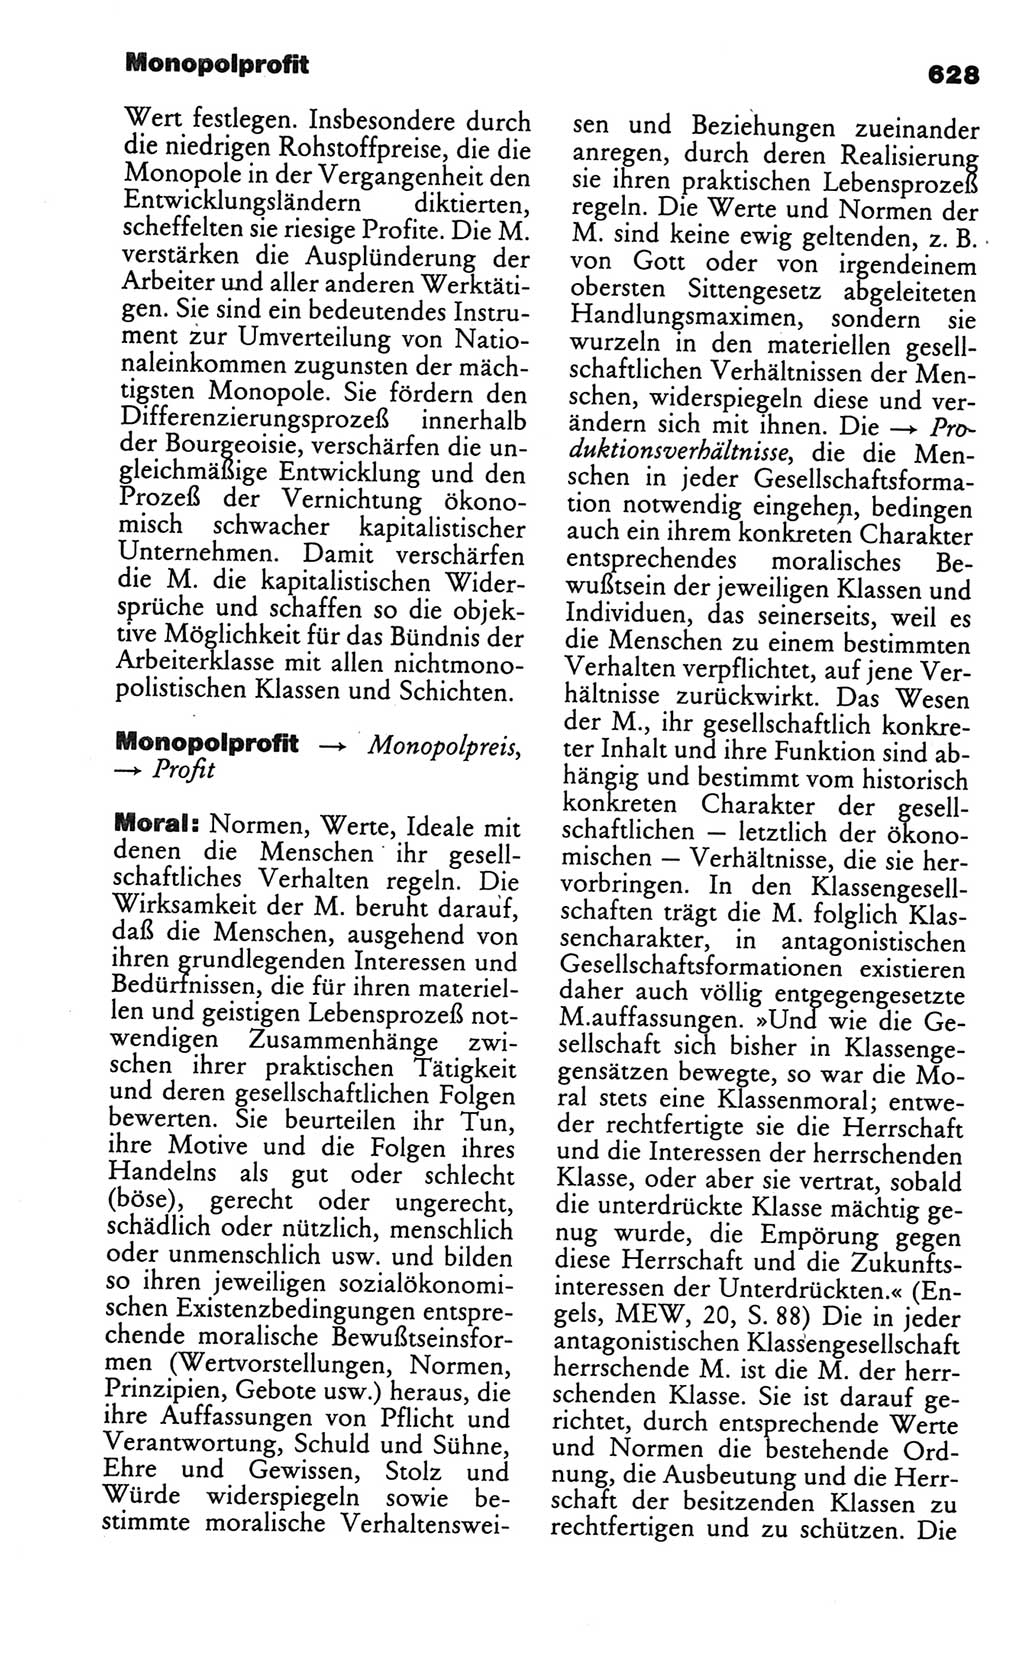 Kleines politisches Wörterbuch [Deutsche Demokratische Republik (DDR)] 1986, Seite 628 (Kl. pol. Wb. DDR 1986, S. 628)